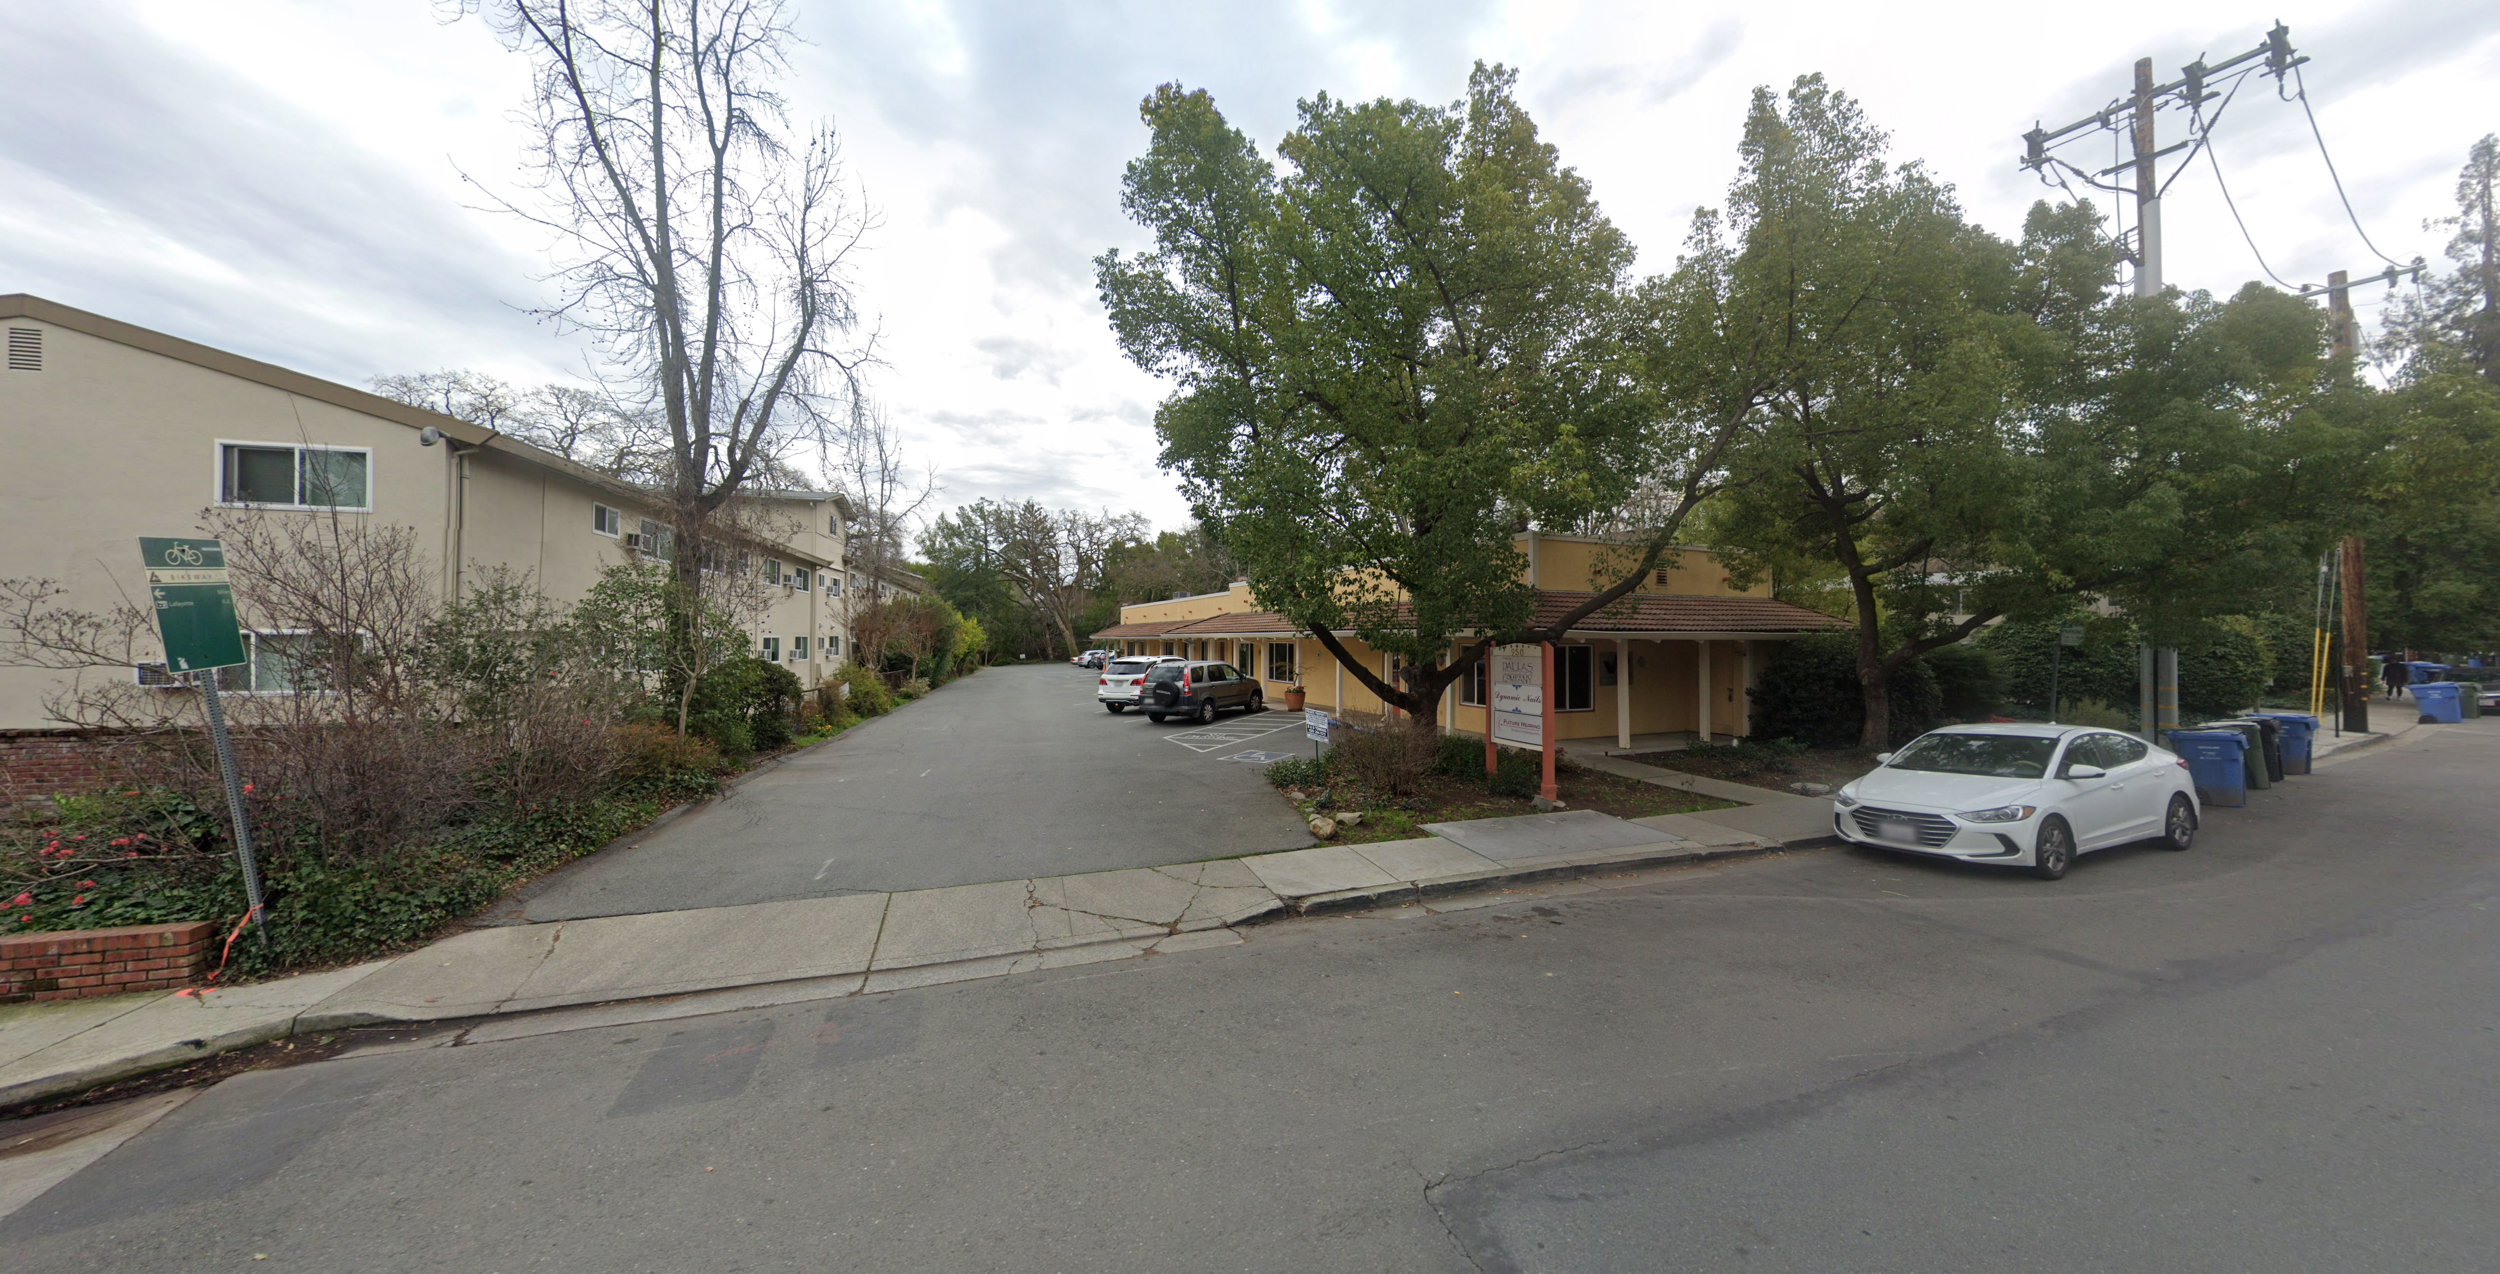 950 Hough Avenue, image via Google Street View